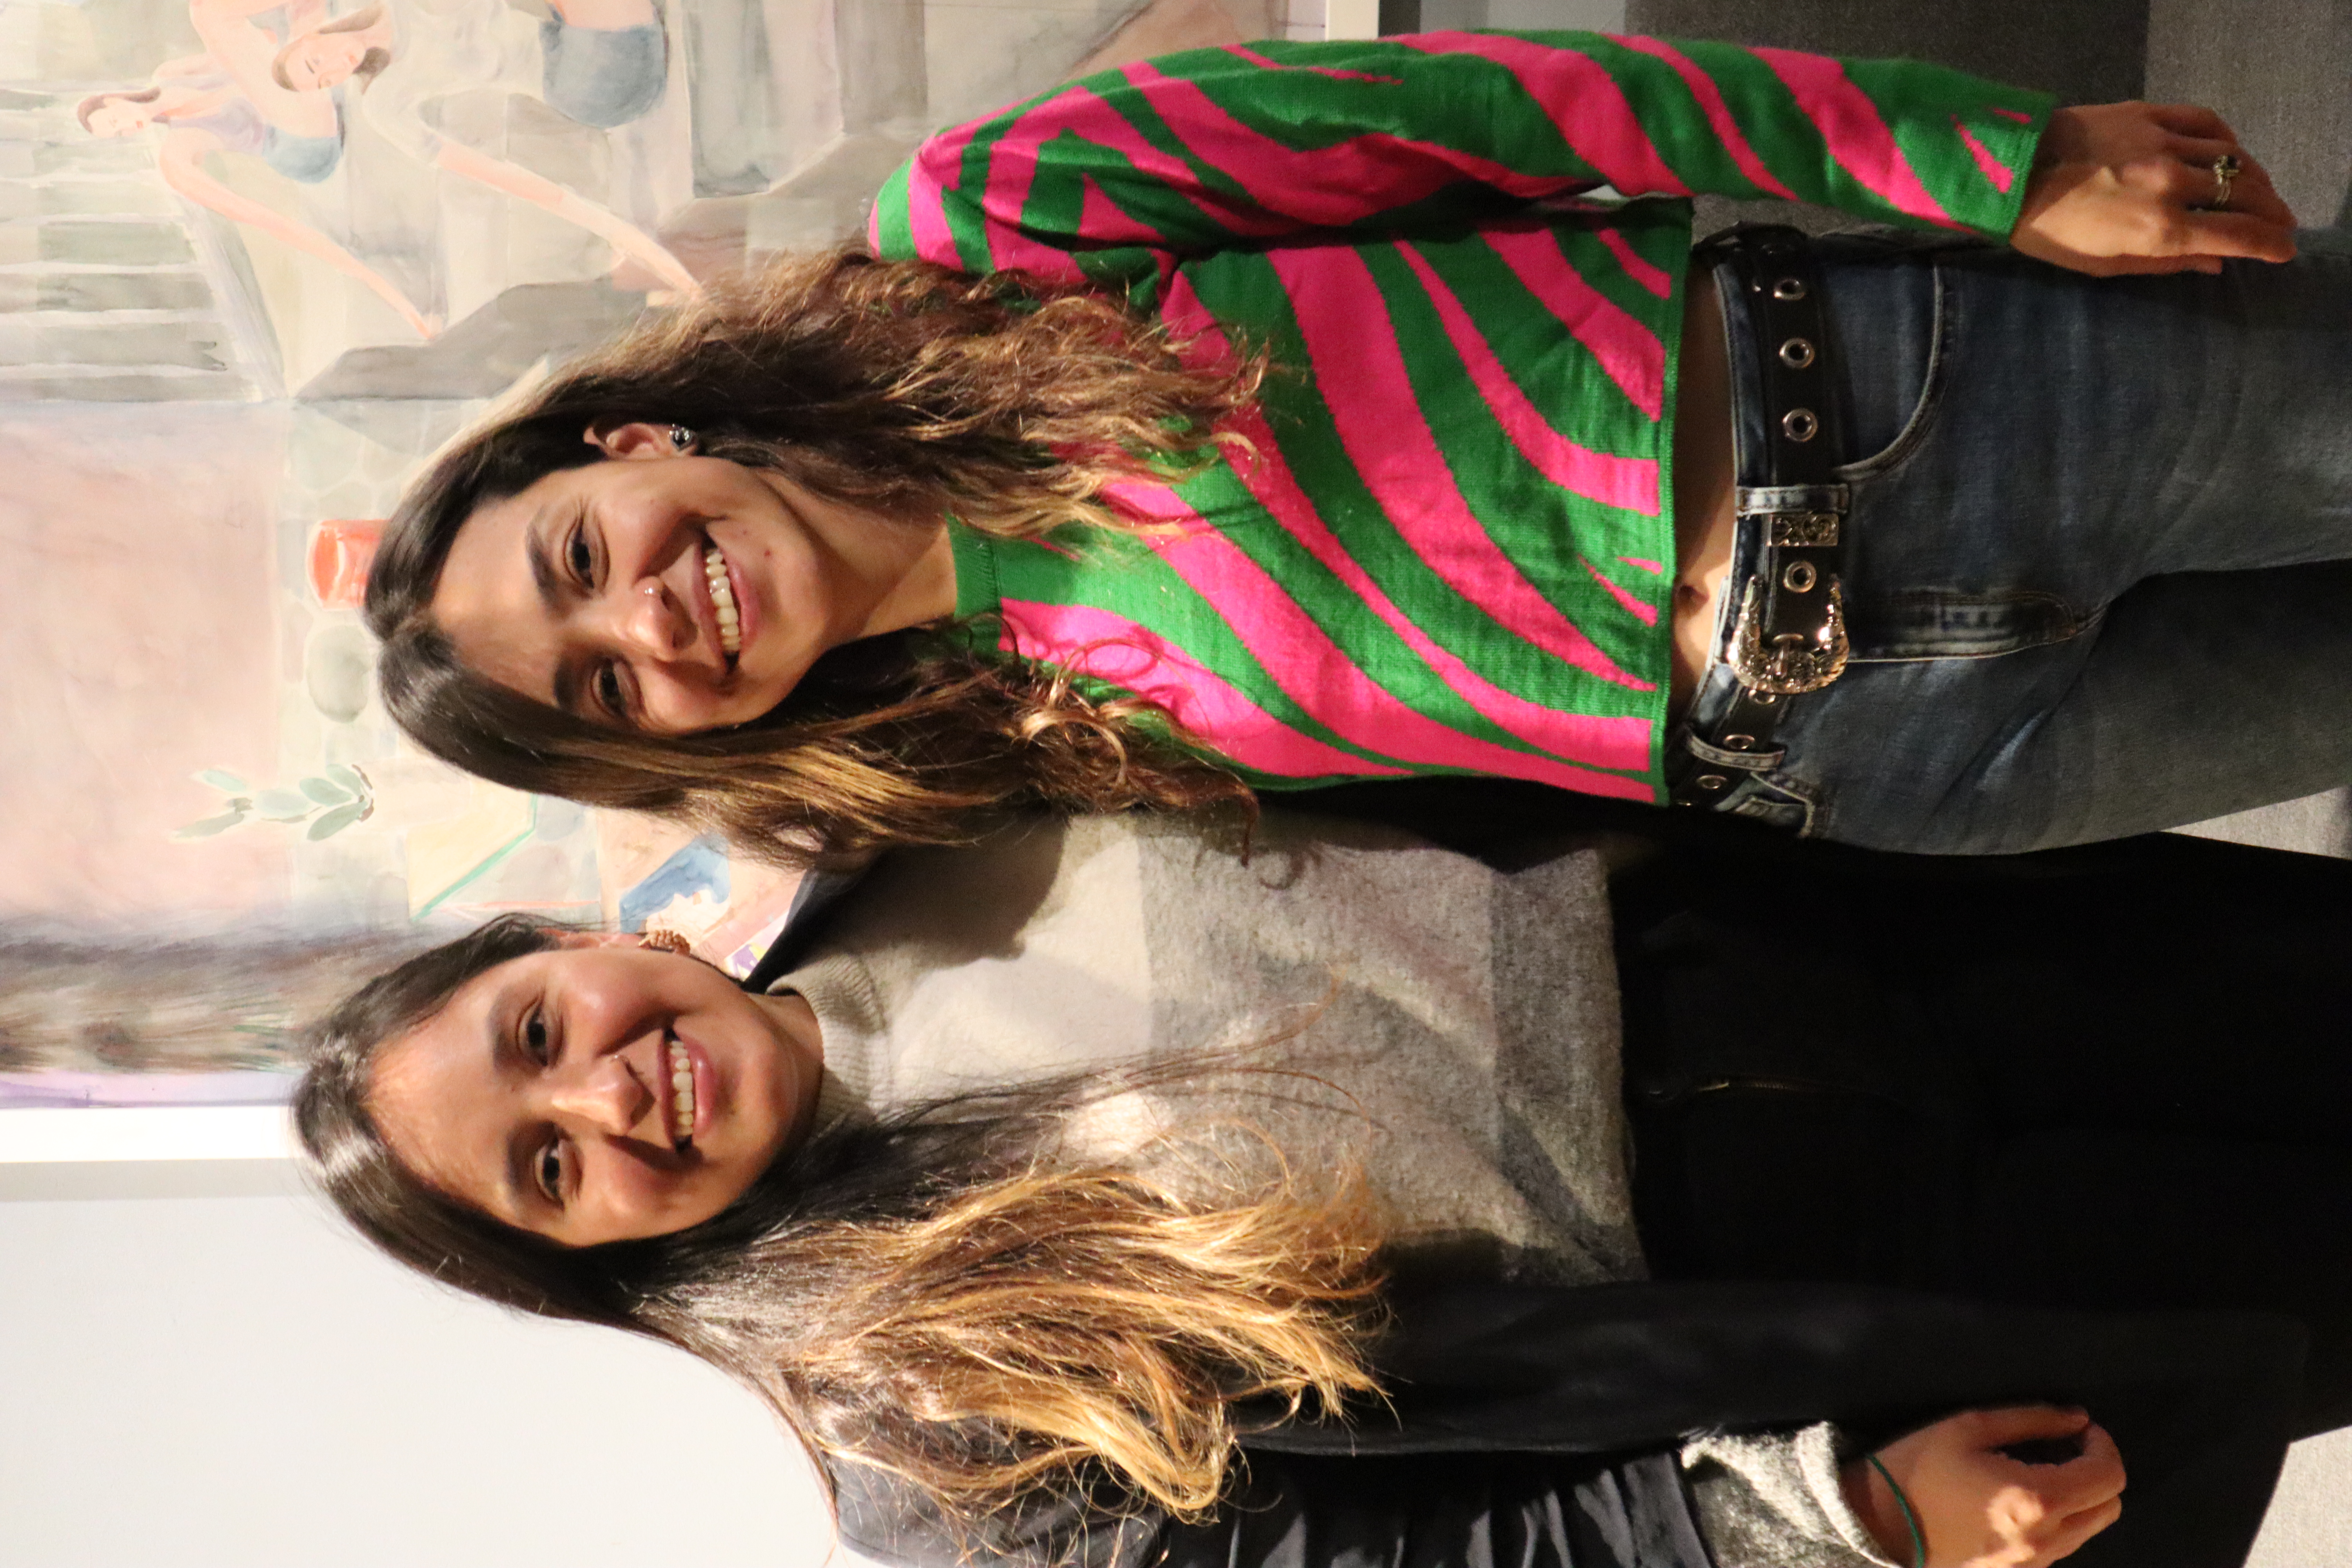 Daniela Rodriguez og Vanessa Vasco besøkte i Oslo i forkant av UPR-høringen av Colombia i november. ©PBINorge